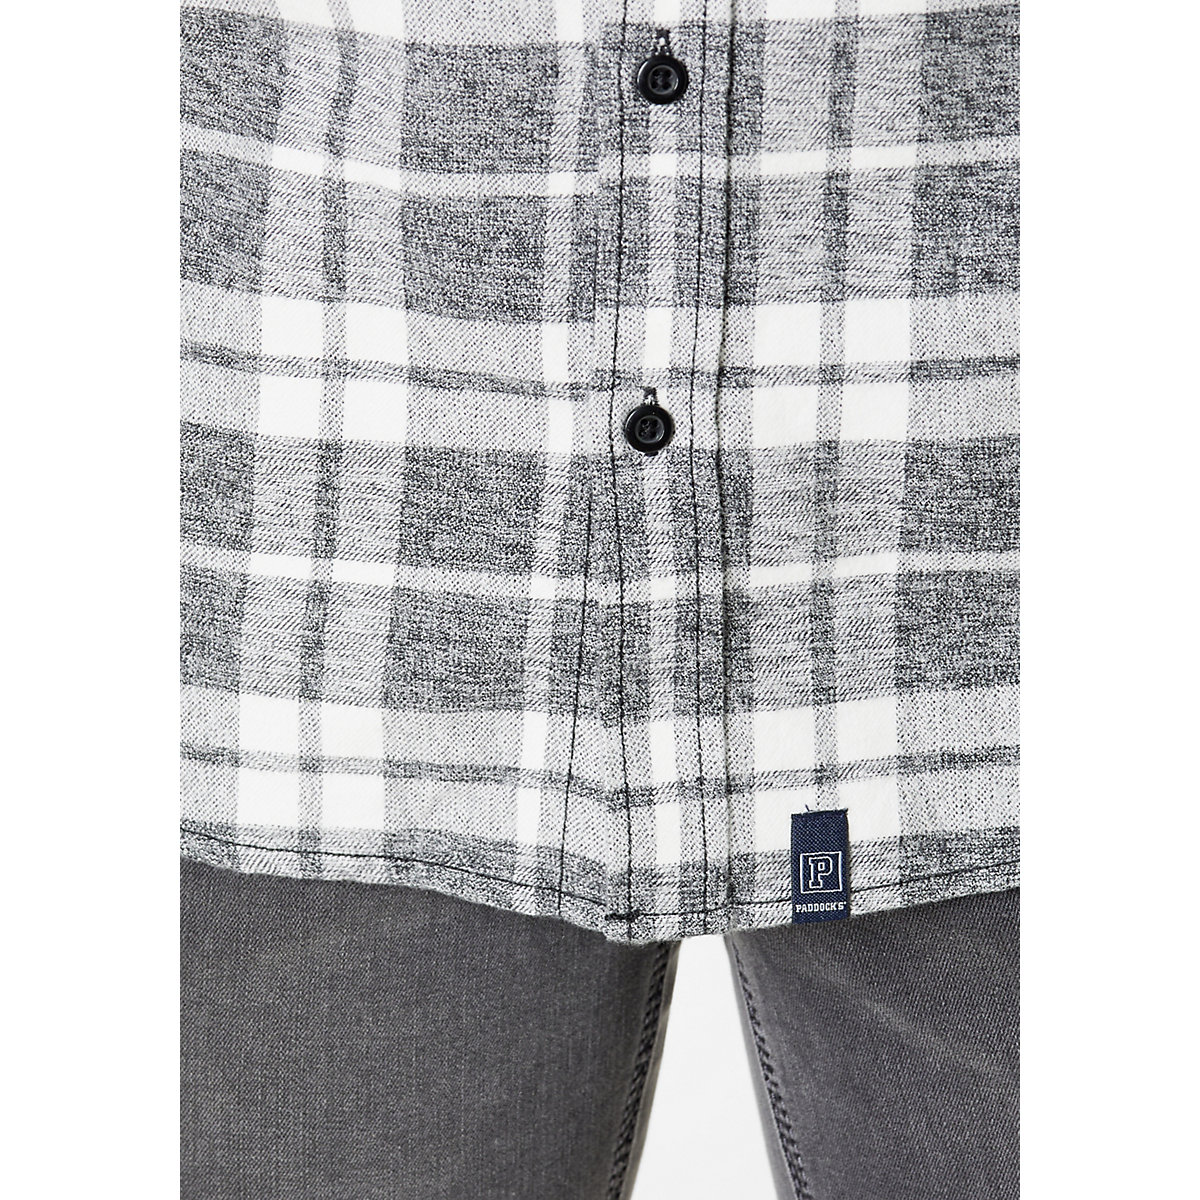 PADDOCK'S® Flanellhemd aus reiner Baumwolle Flannel check shirt with 2 bust pockets anthrazit EB10900